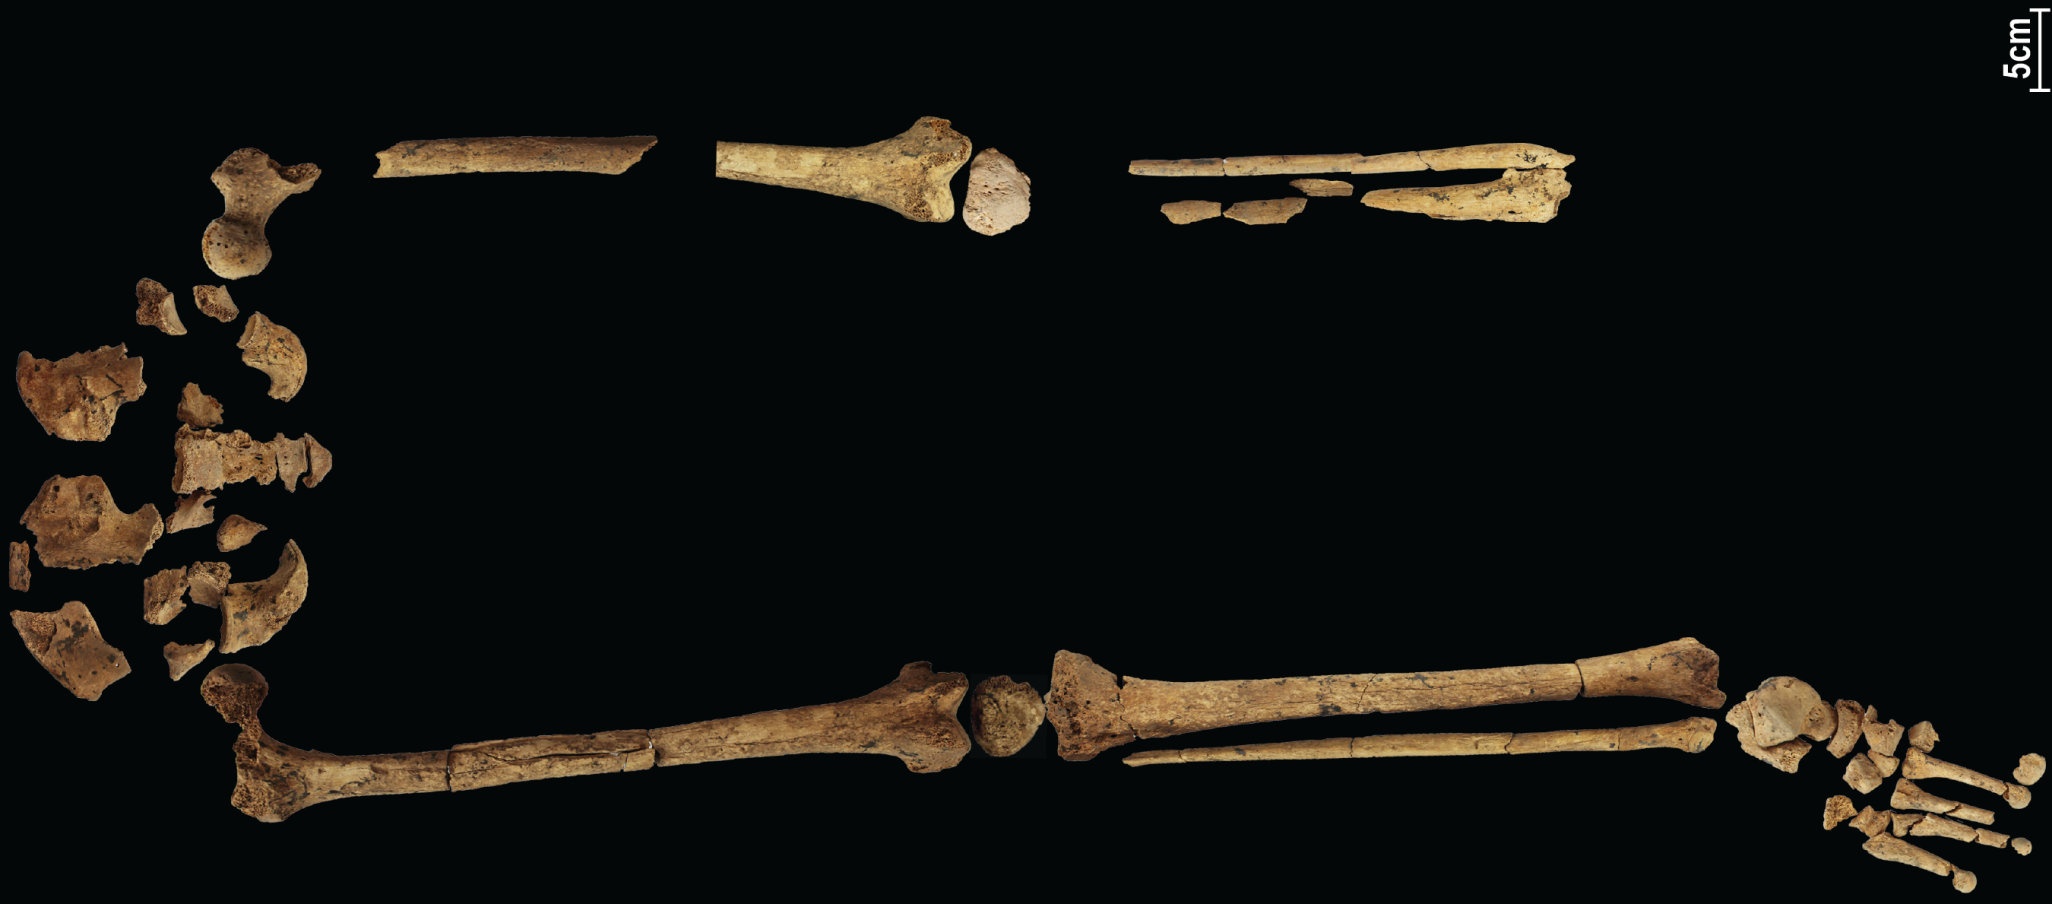 Скелет возрастом 31,000 4 лет, демонстрирующий самую раннюю из известных сложных операций, может переписать историю! XNUMX